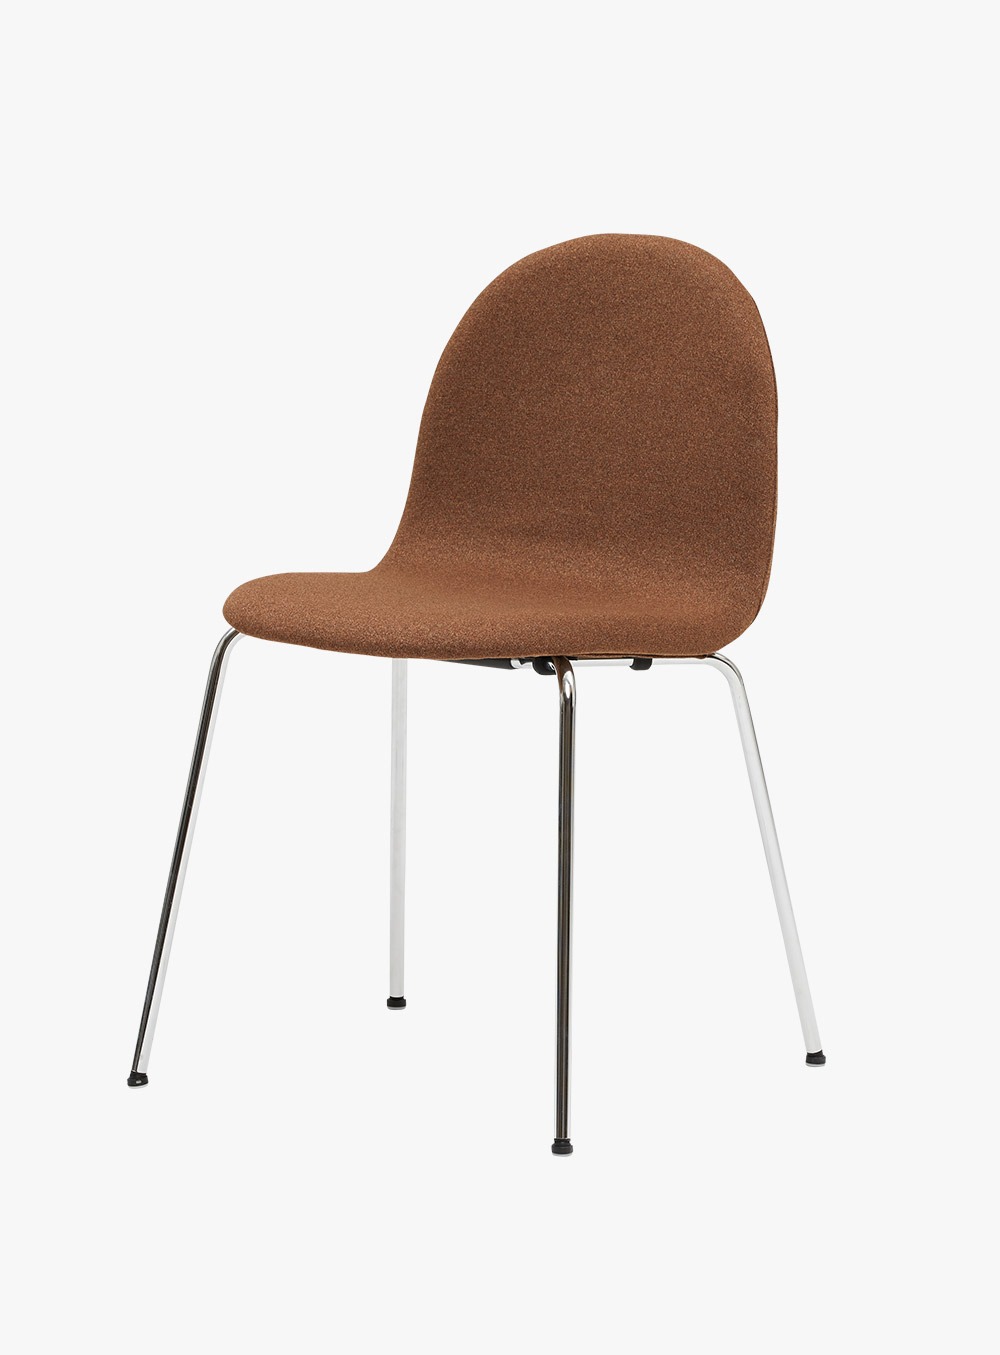 잭슨카멜레온 - Petalo Chair 브릭/크롬ㅣB11-C15